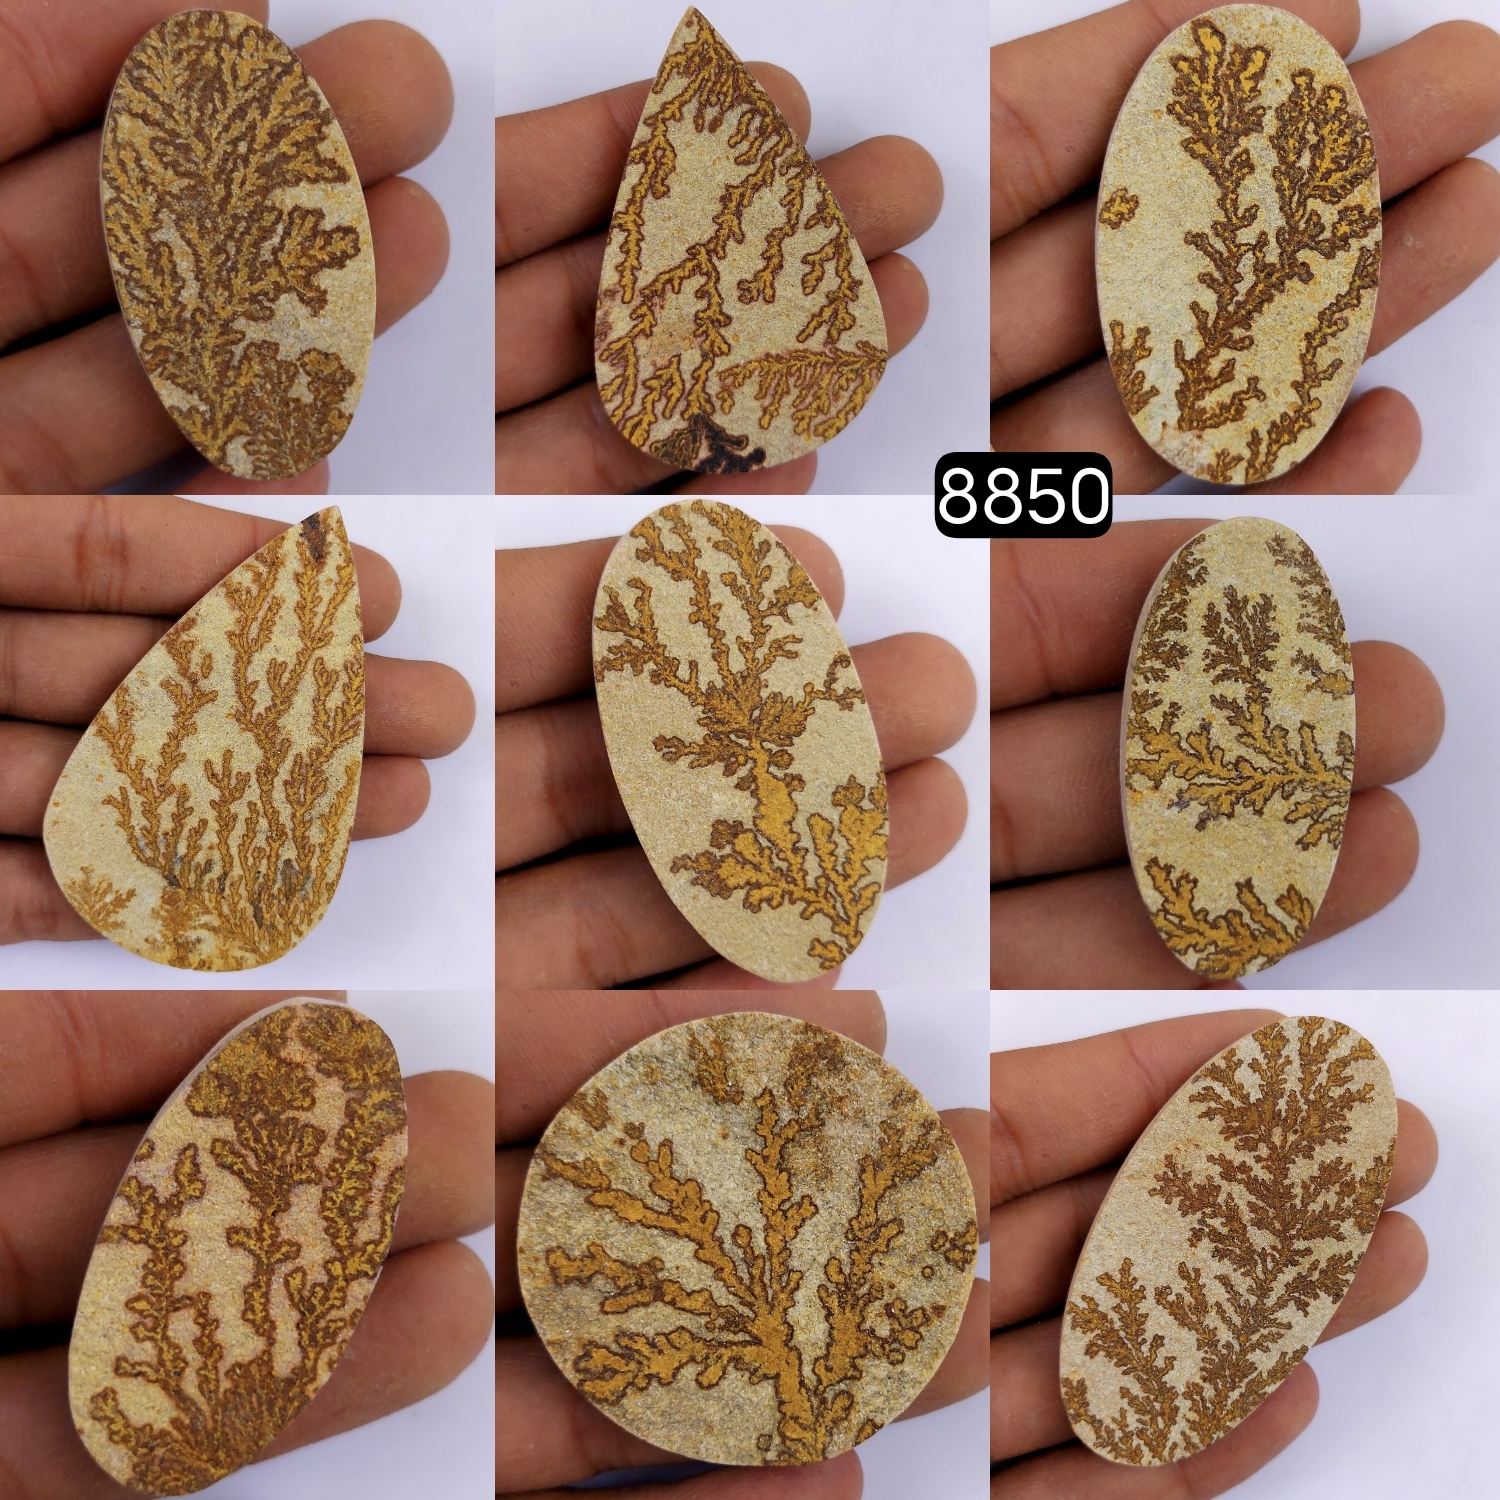 9Pcs 835Cts  Natural Manganese Dendrites Loose Gemstone Cabochon Mix shapes and Size Lot 70x43 42x20mm#8850